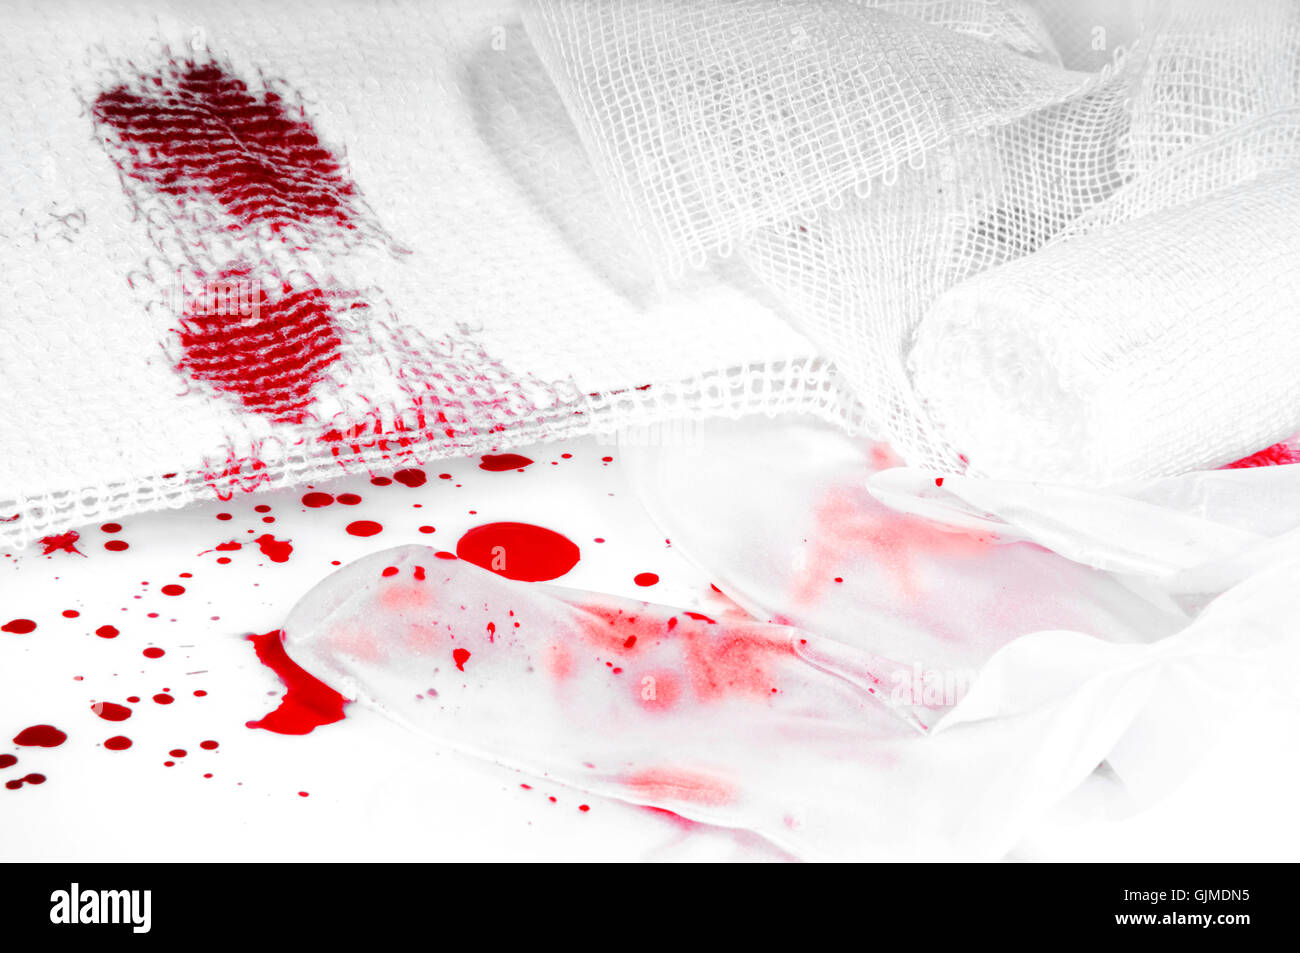 accident bandage blood Stock Photo